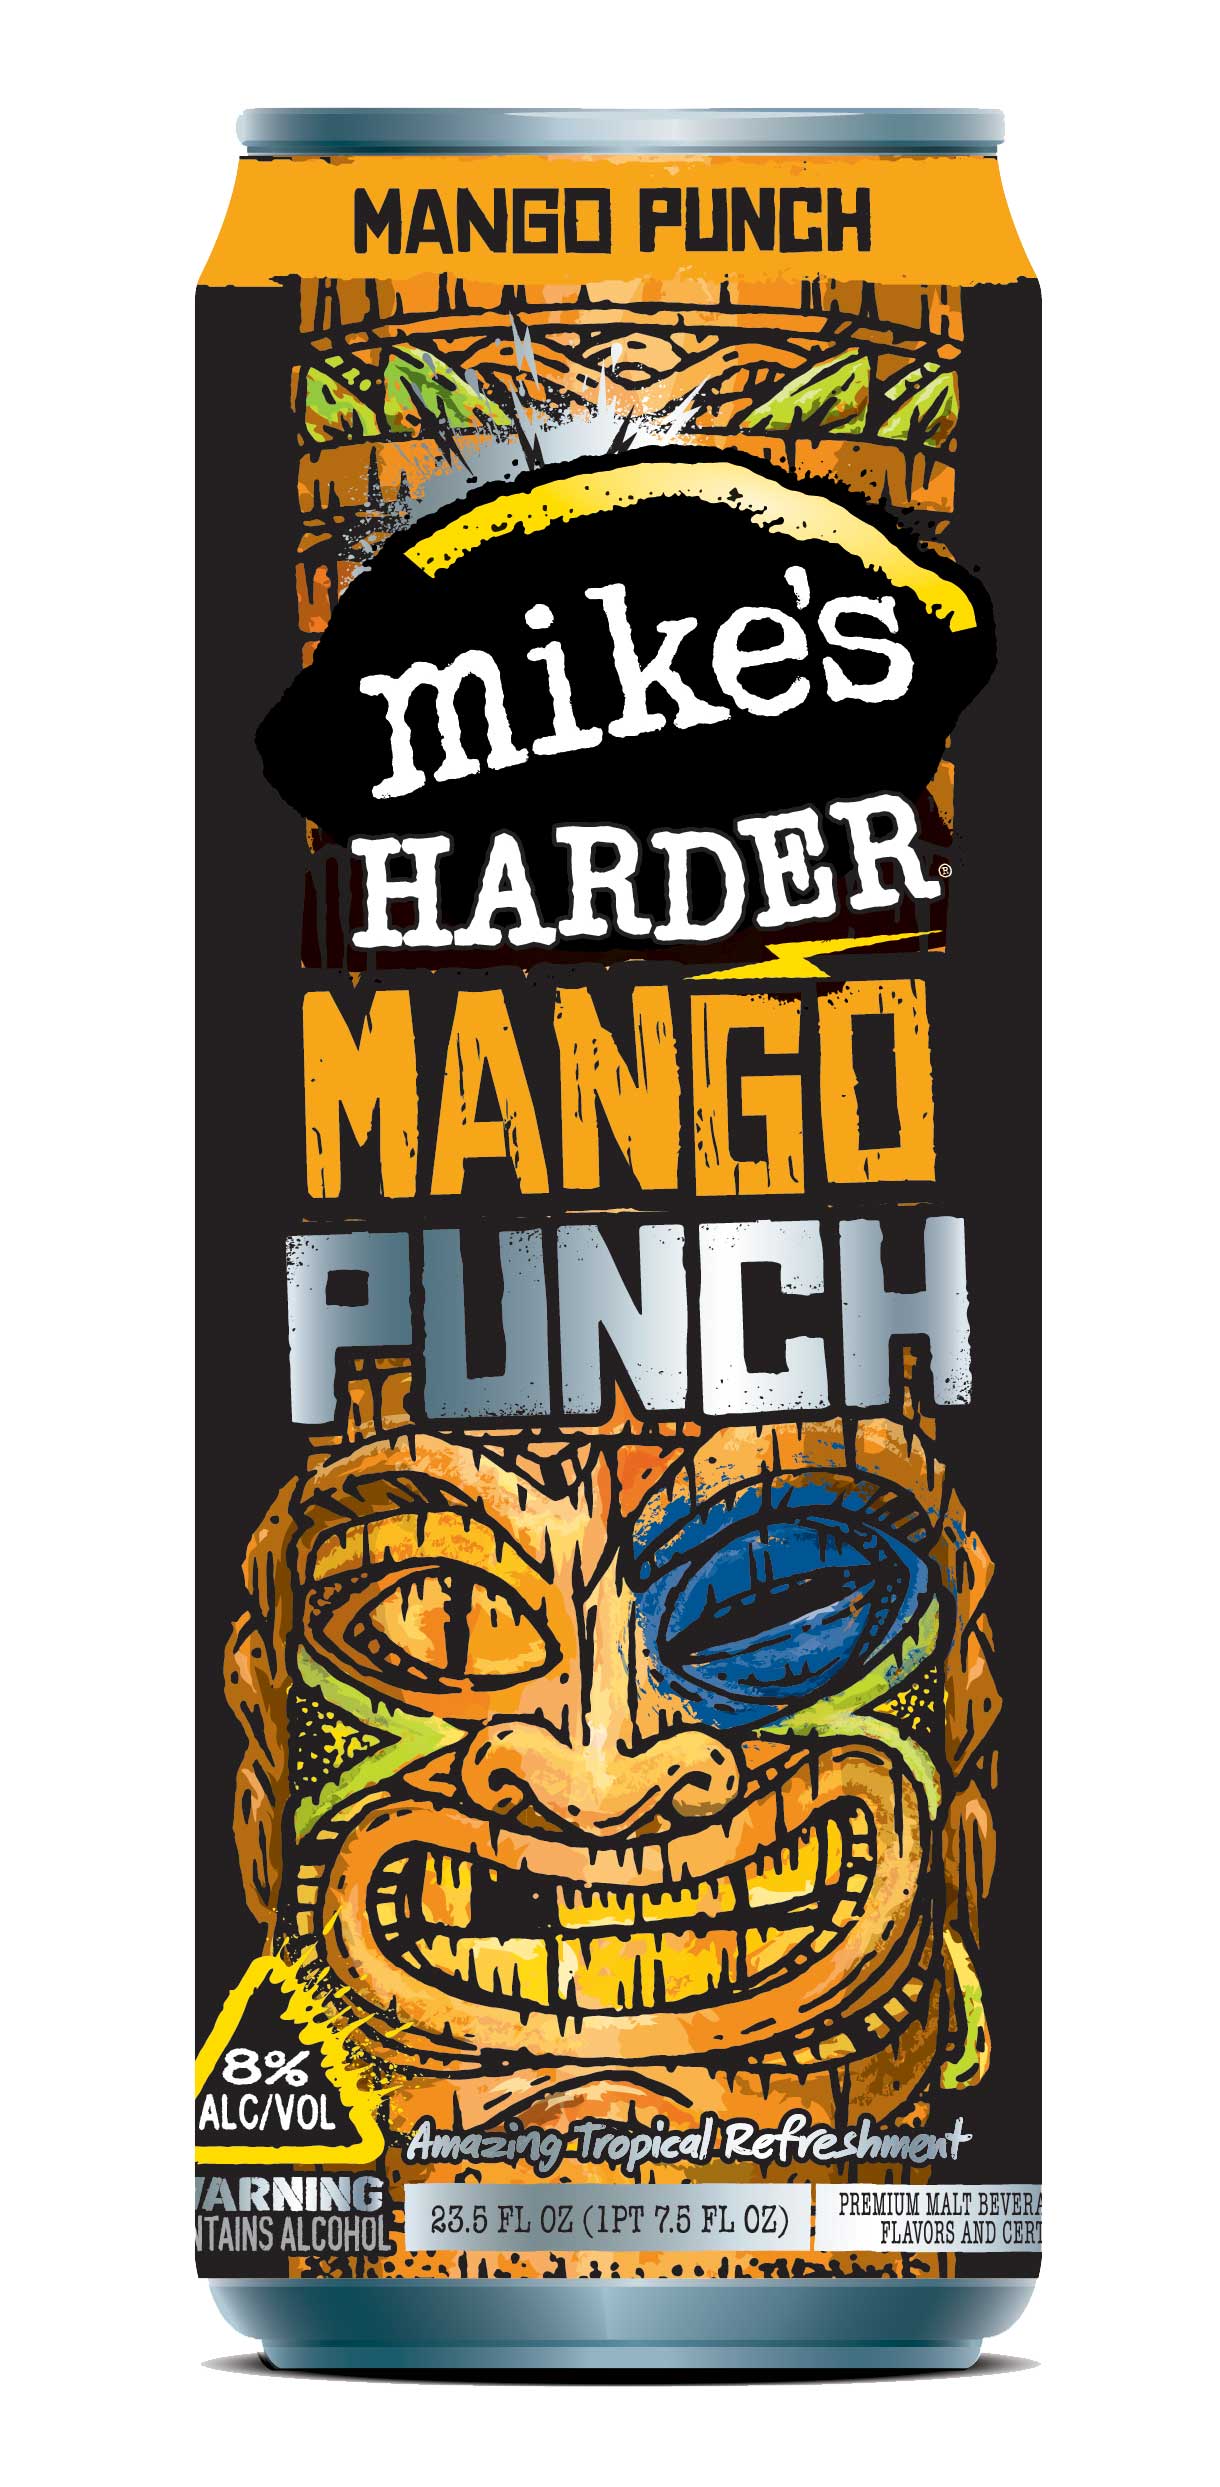 Chris Musselman Illustration Mikes Harder Tiki Man Mango Punch Can